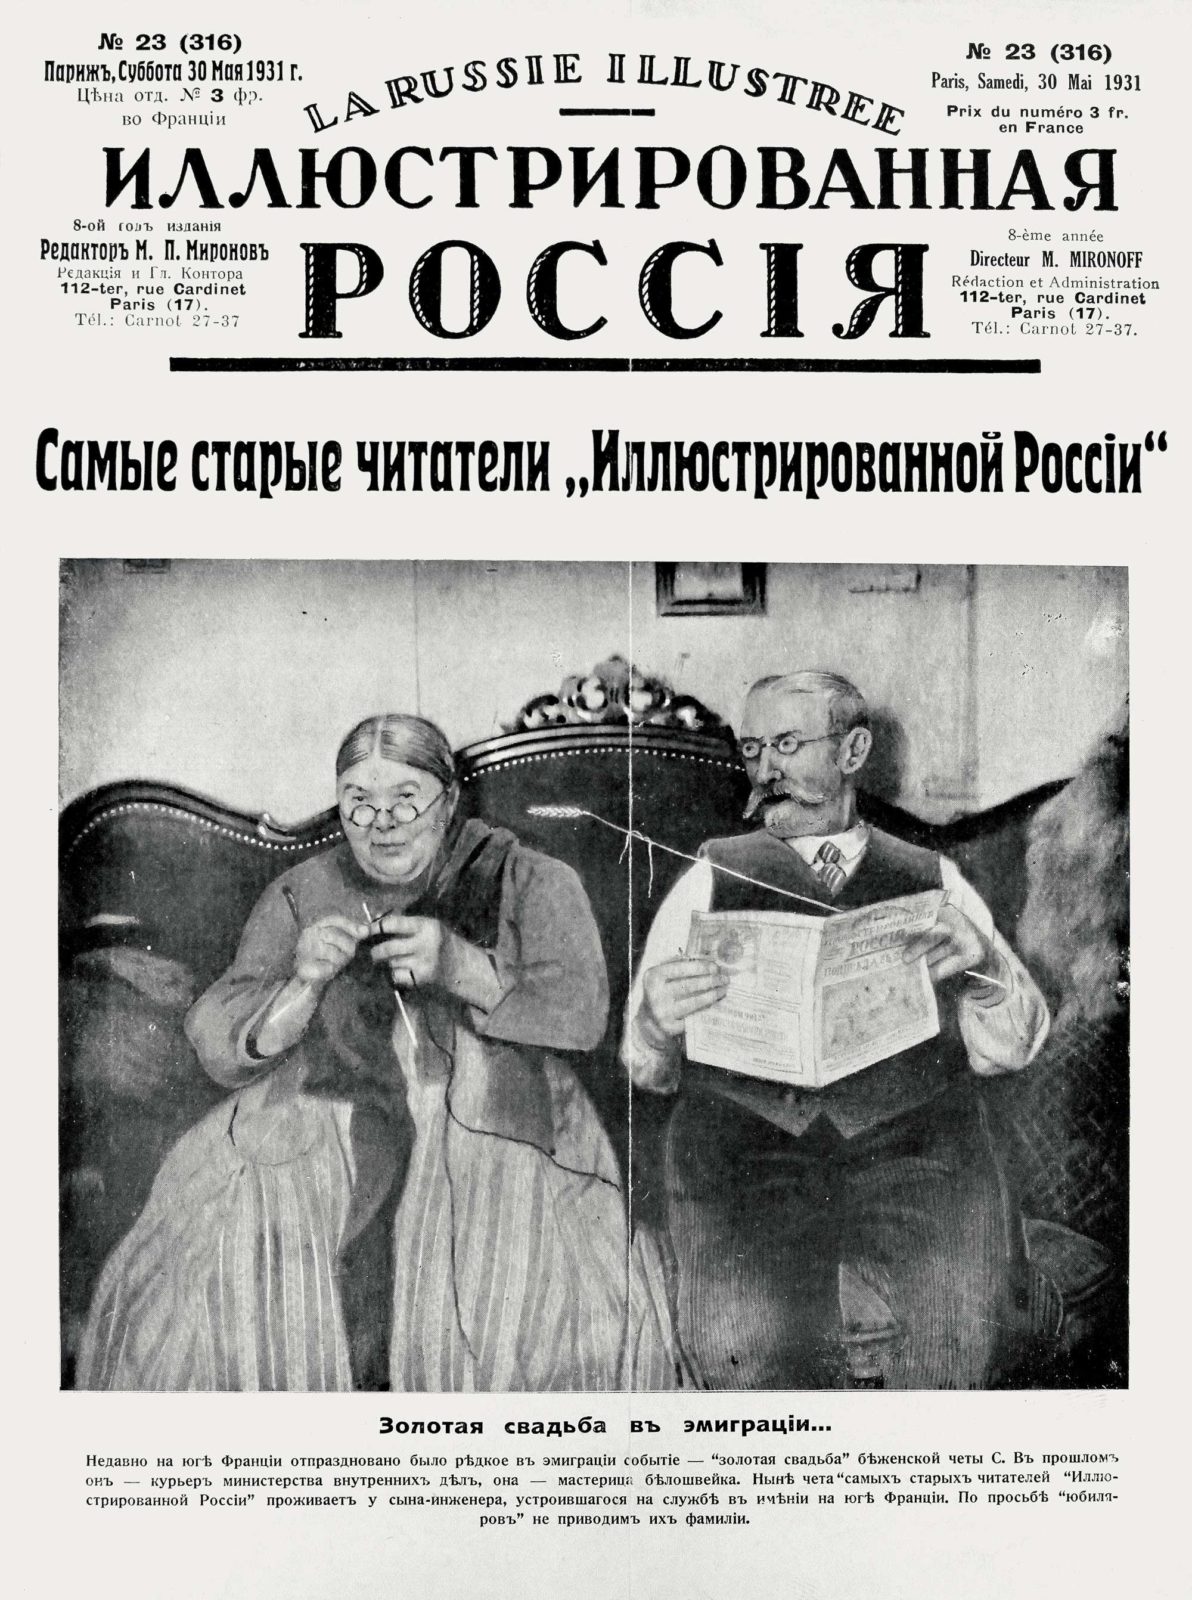 Архив редких изданий русской эмигрантской прессы выложен в Интернет